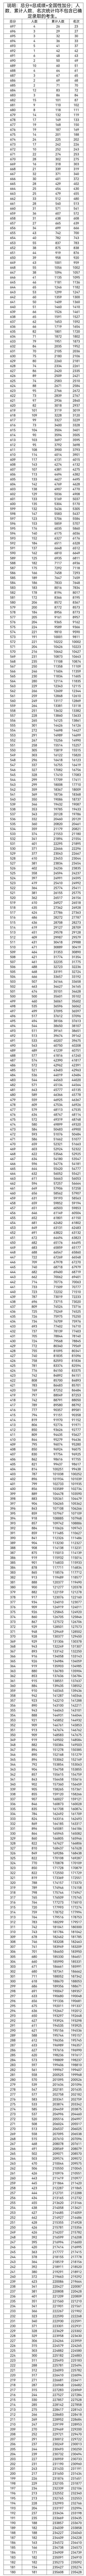 2023广西高考一分一段位次表